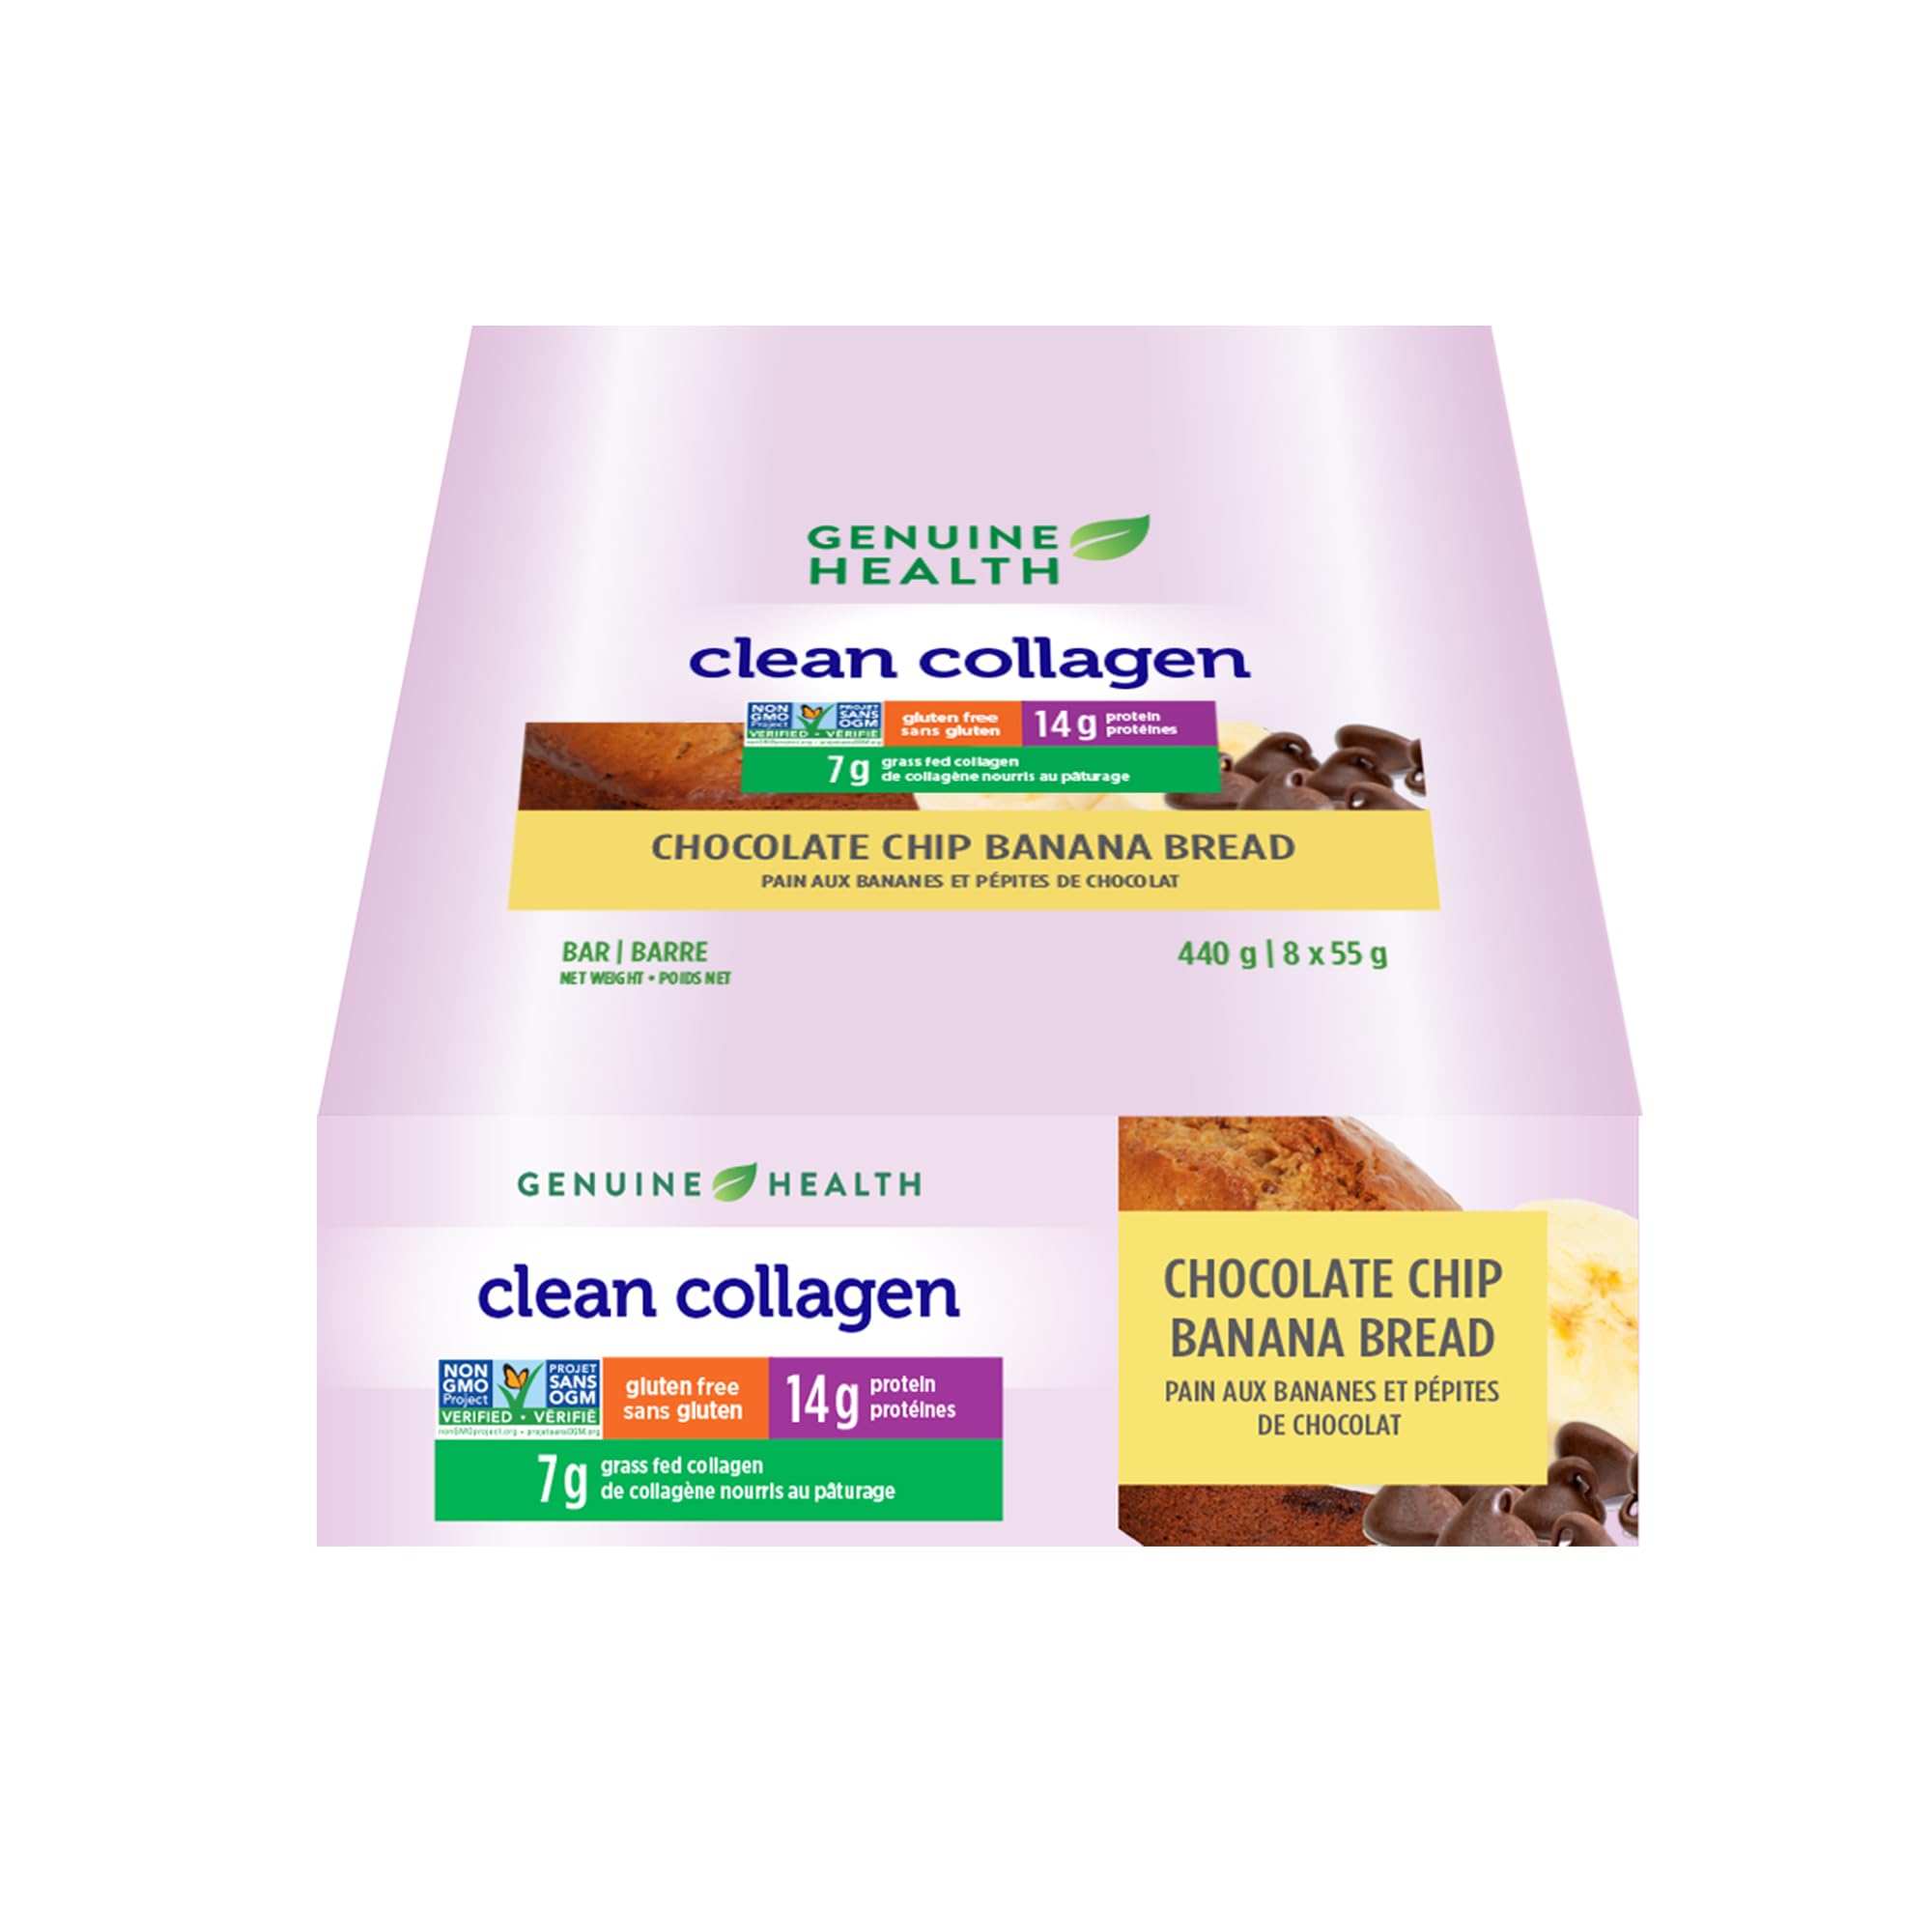 Clean collagen (pain au bananes/pépites de chocolat) 8x55g